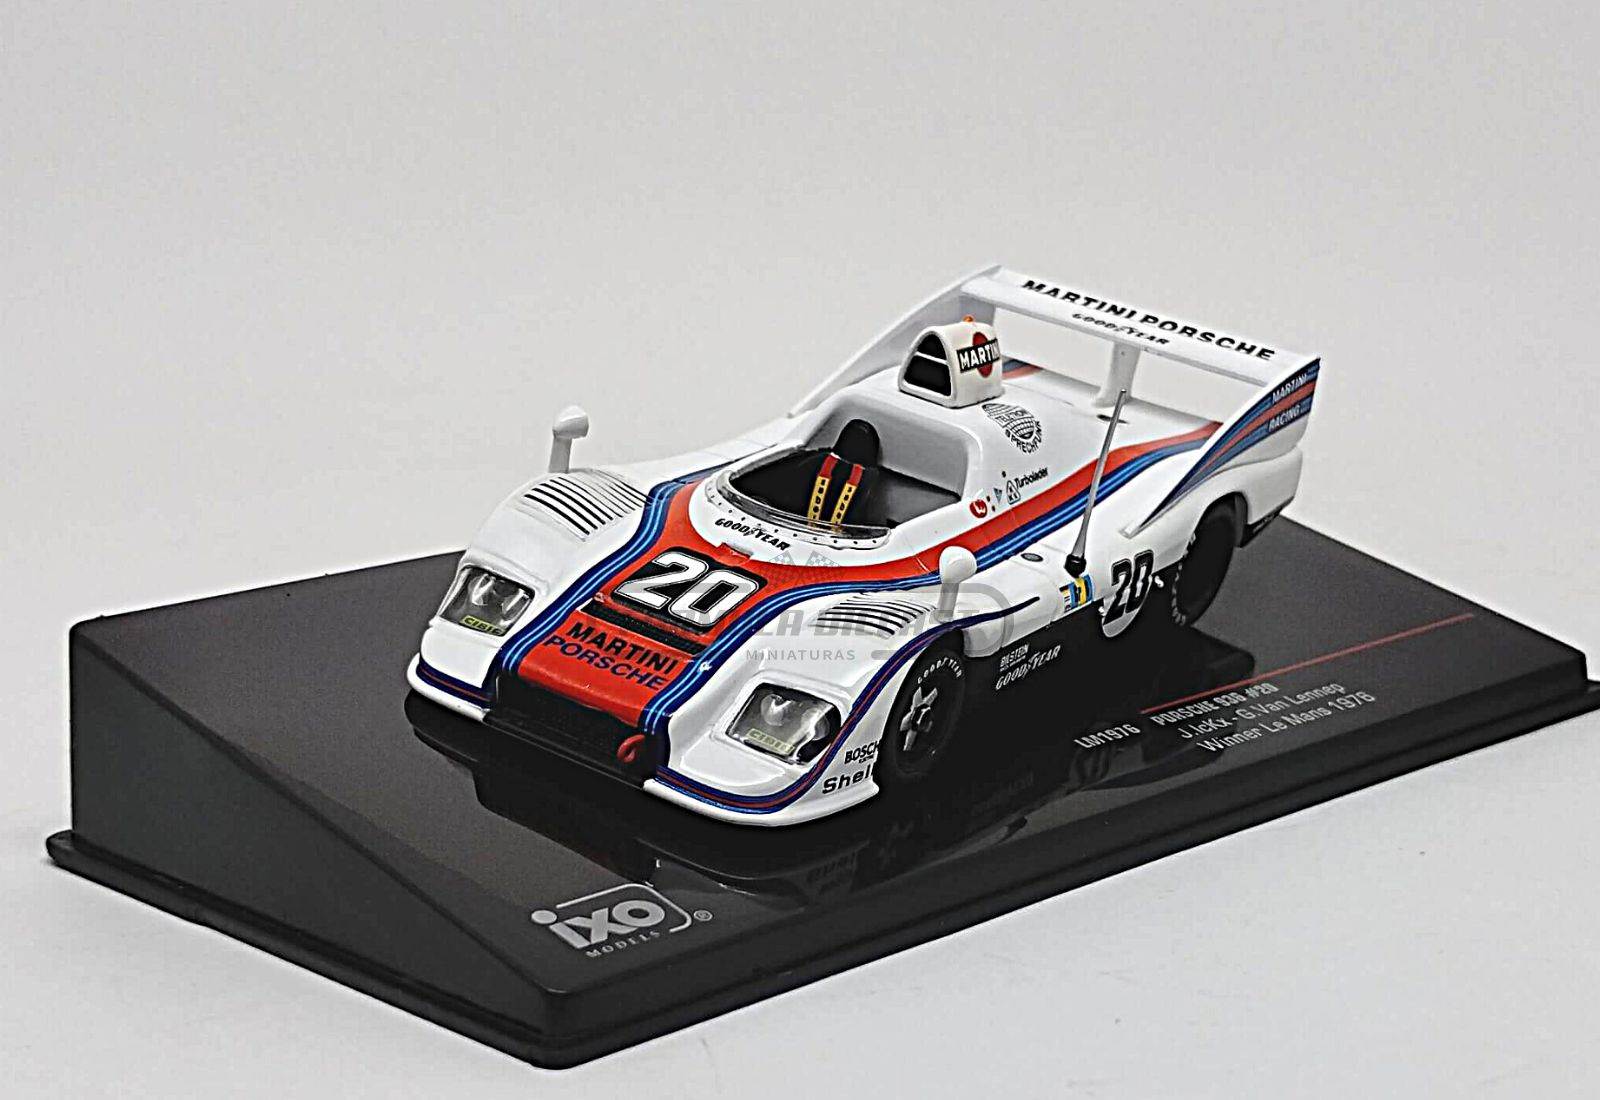 Miniatura de carro Porsche 936 #20 Ickx/van Lennep, Vencedor 24h Le Mans 1976, escala 1:43, marca IXO